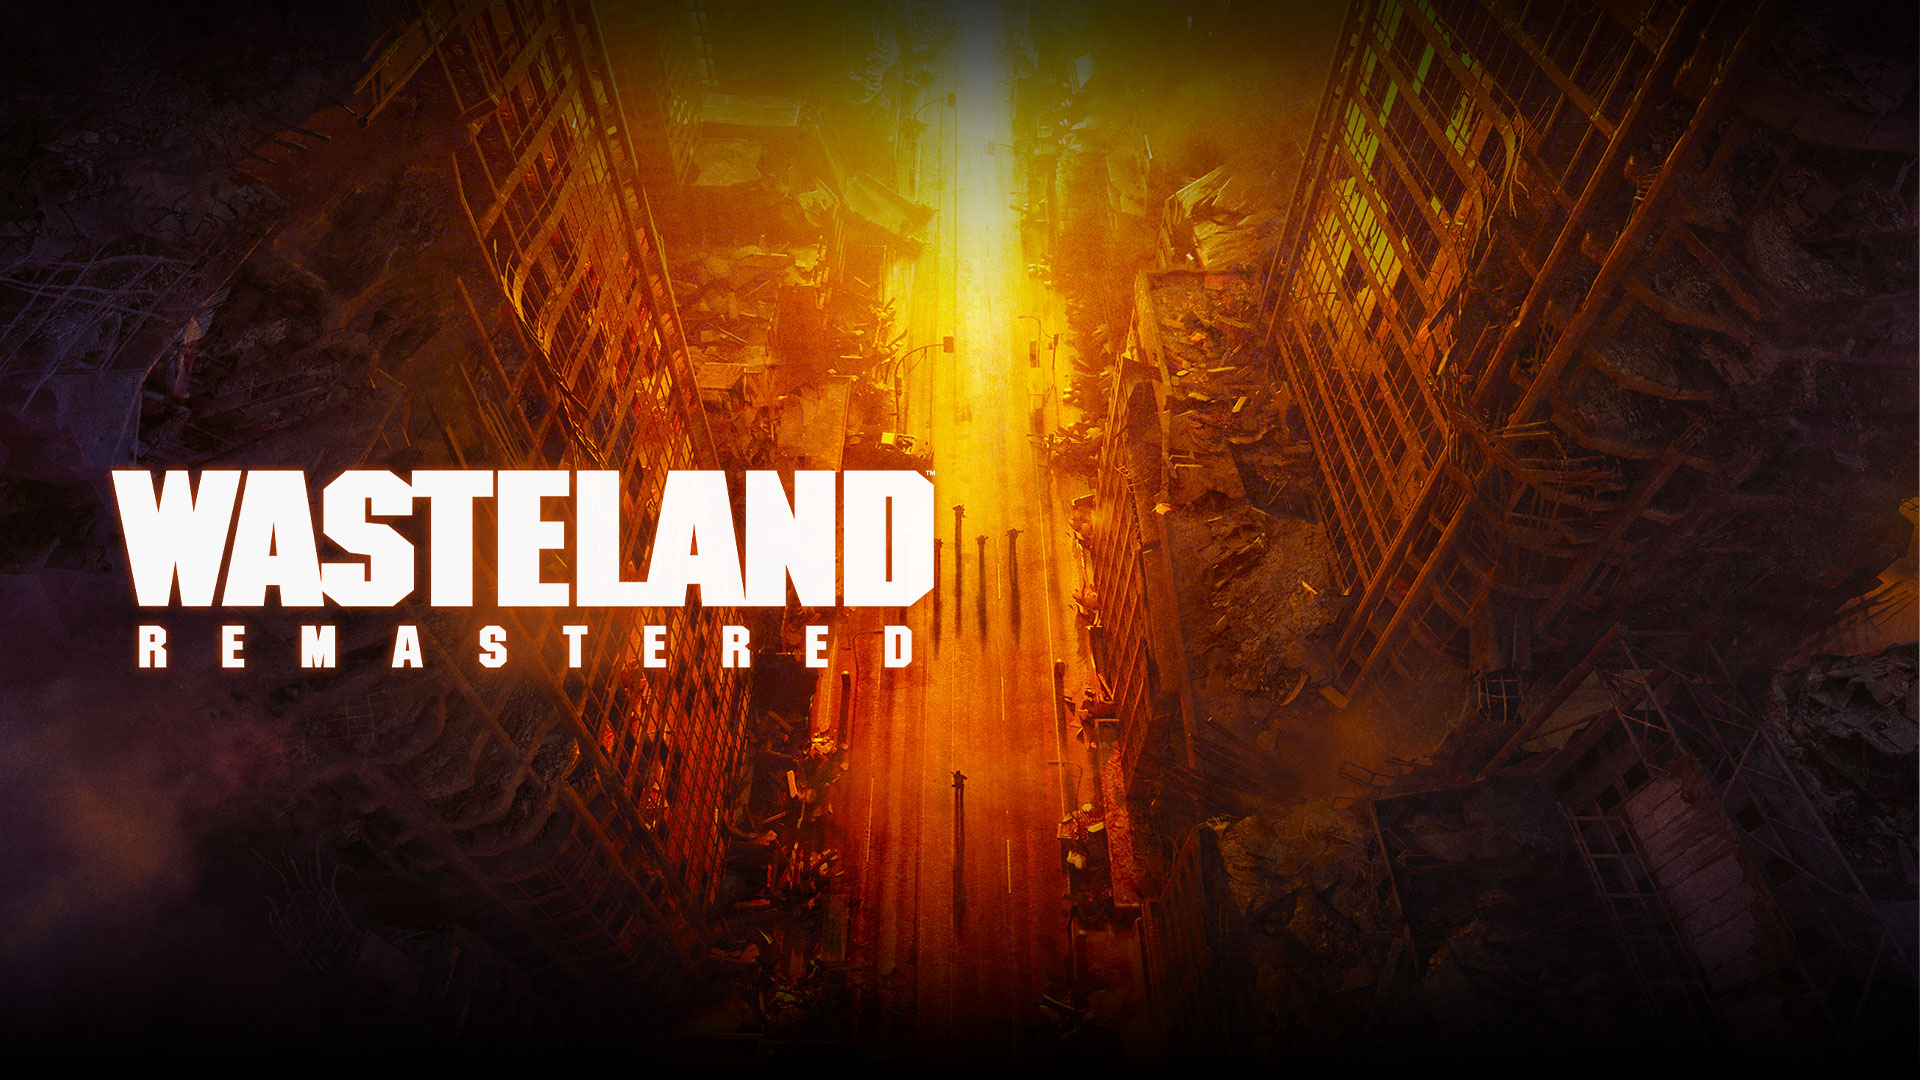 Wasteland Remastered, bovenaanzicht van verwoeste gebouwen en mensen op straat in gele, oranje en rode tinten